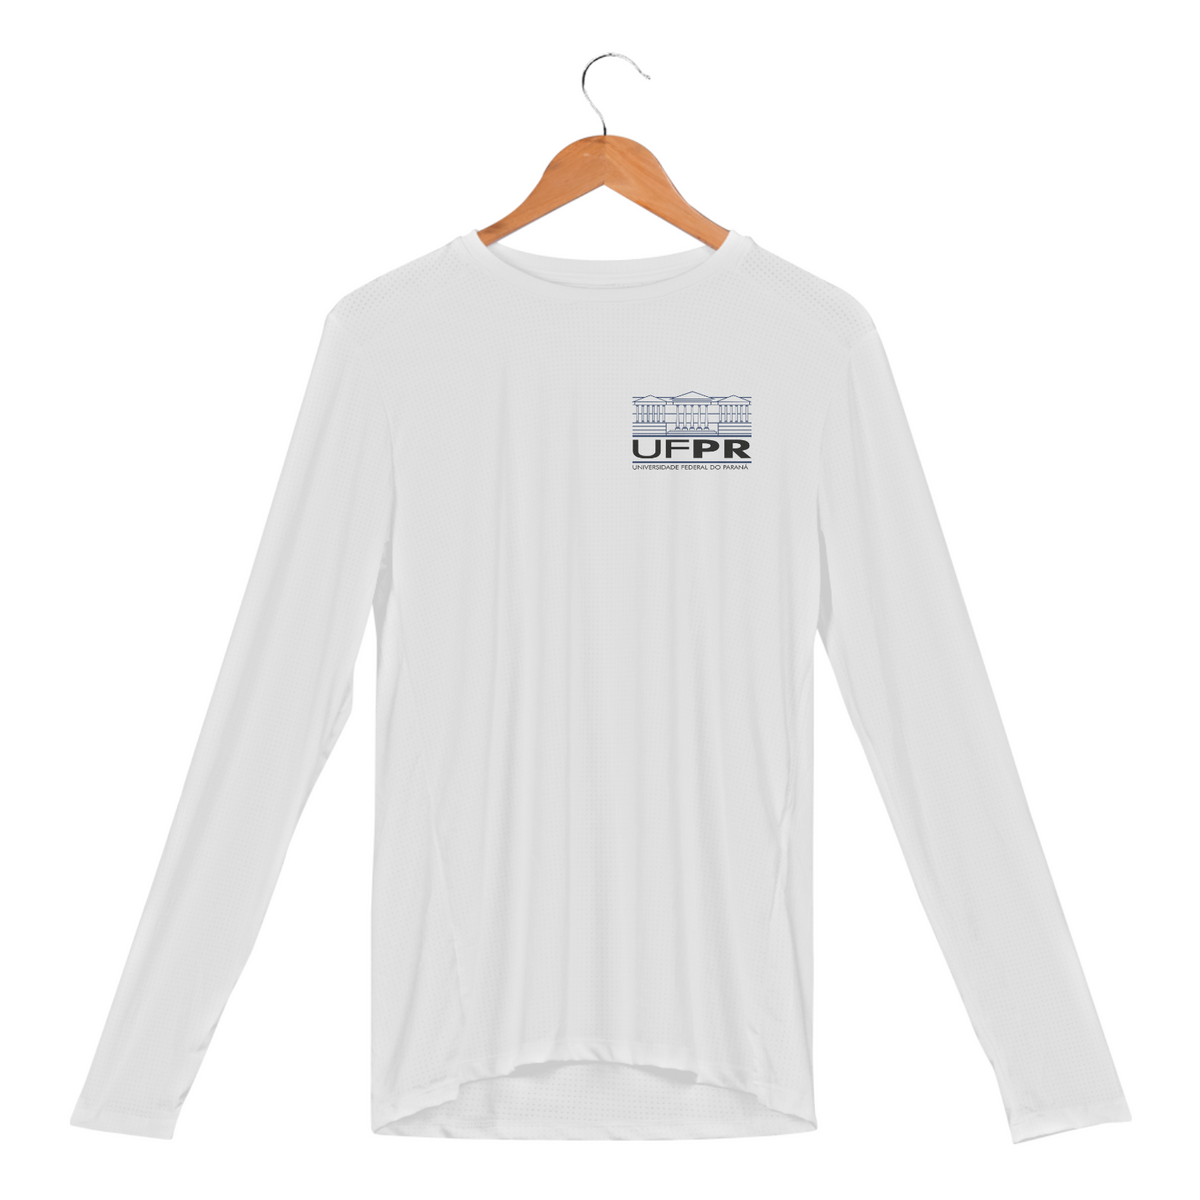 Nome do produto: Camiseta manga comprida [UFPR] {branca} - no peito